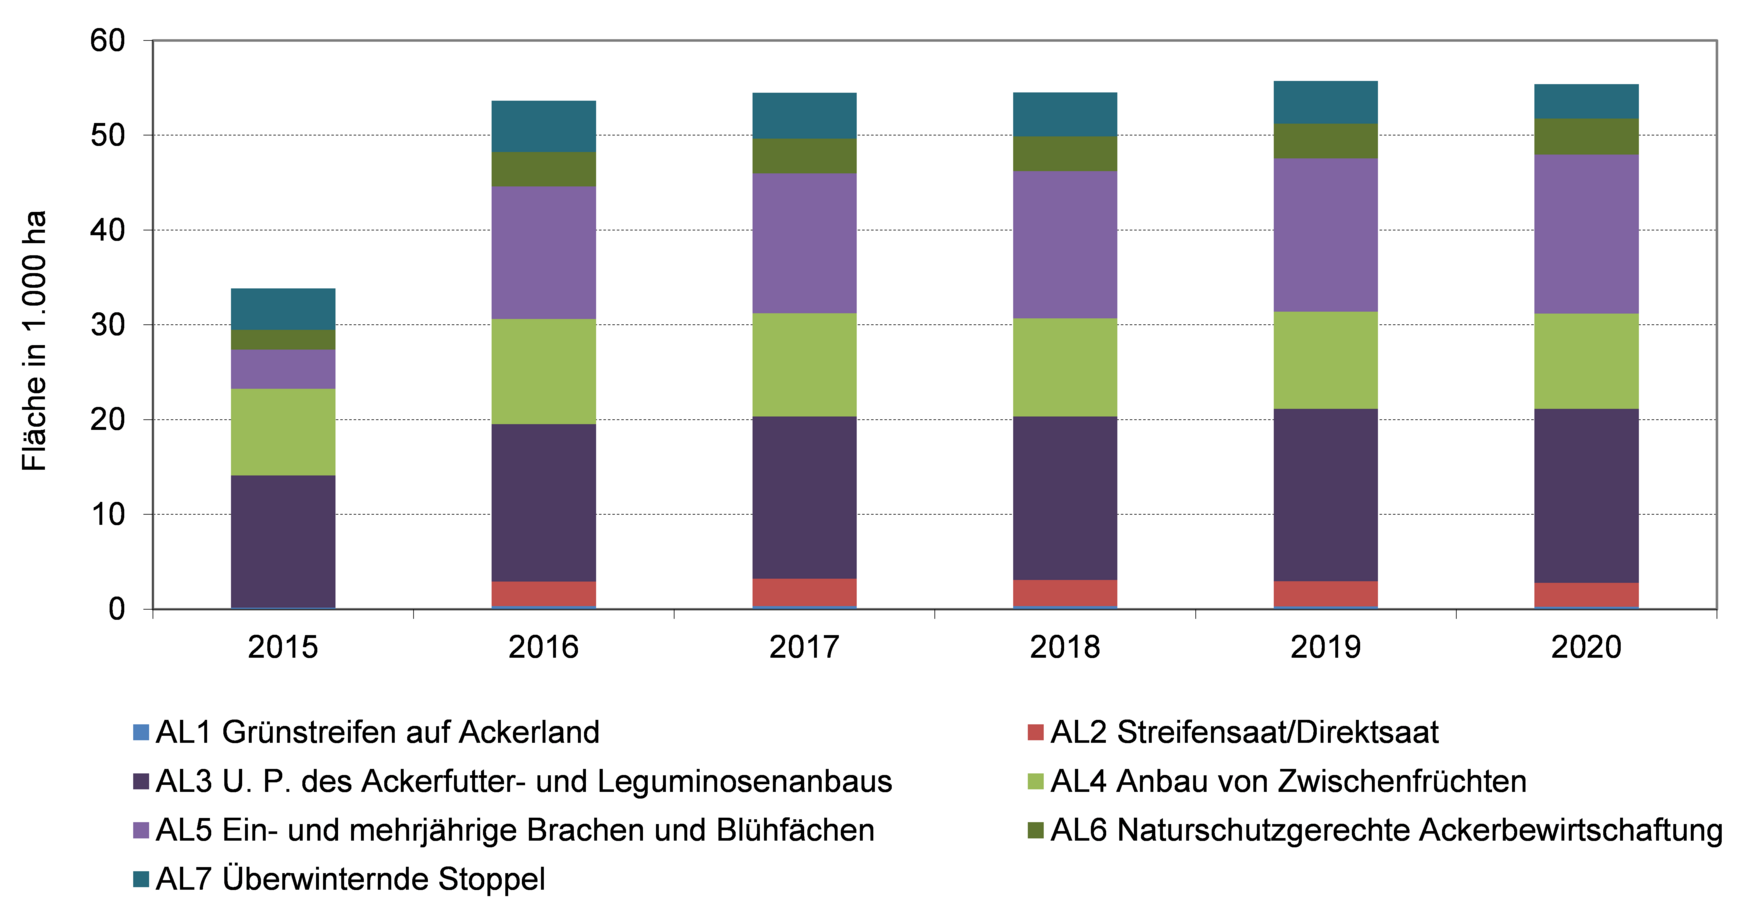 Förderfläche (in 1.000 ha) für Vorhaben der RL AUK/2015 auf Ackerland in den Jahren 2015-2020